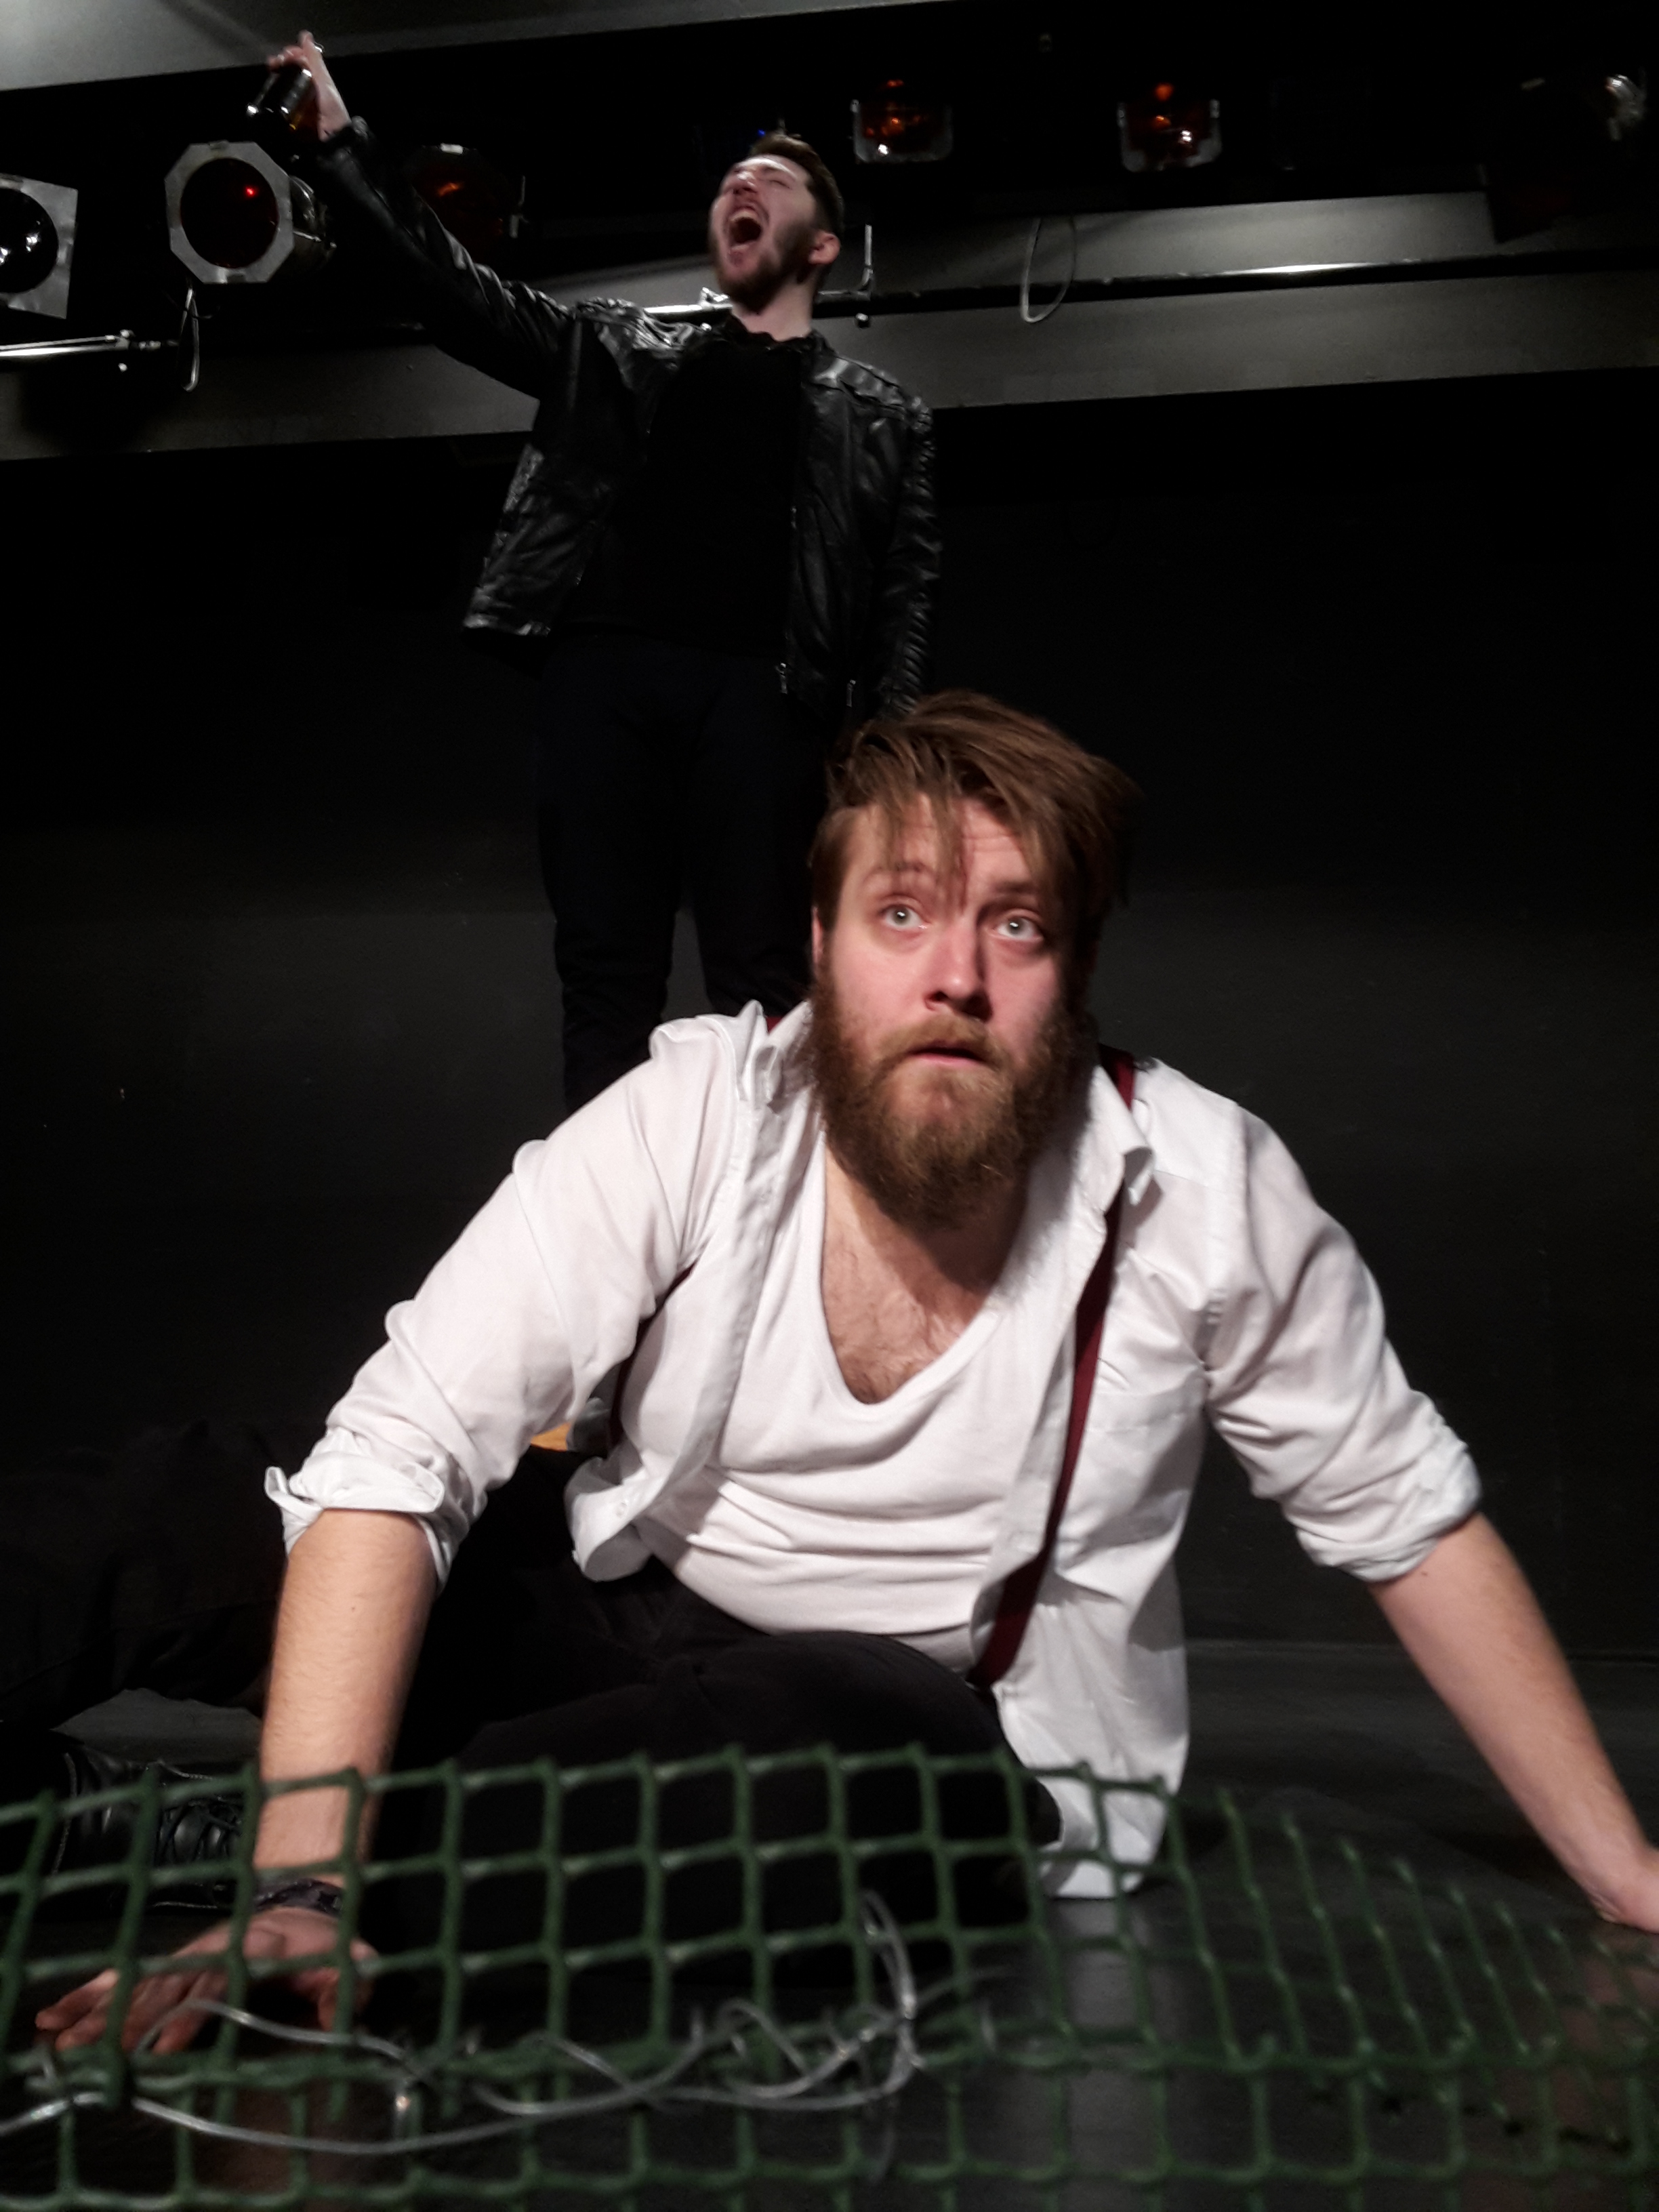 Szenenfoto: Woyzeck kauert auf dem Boden; der Tambourmajor gröhlt im Hintergrund